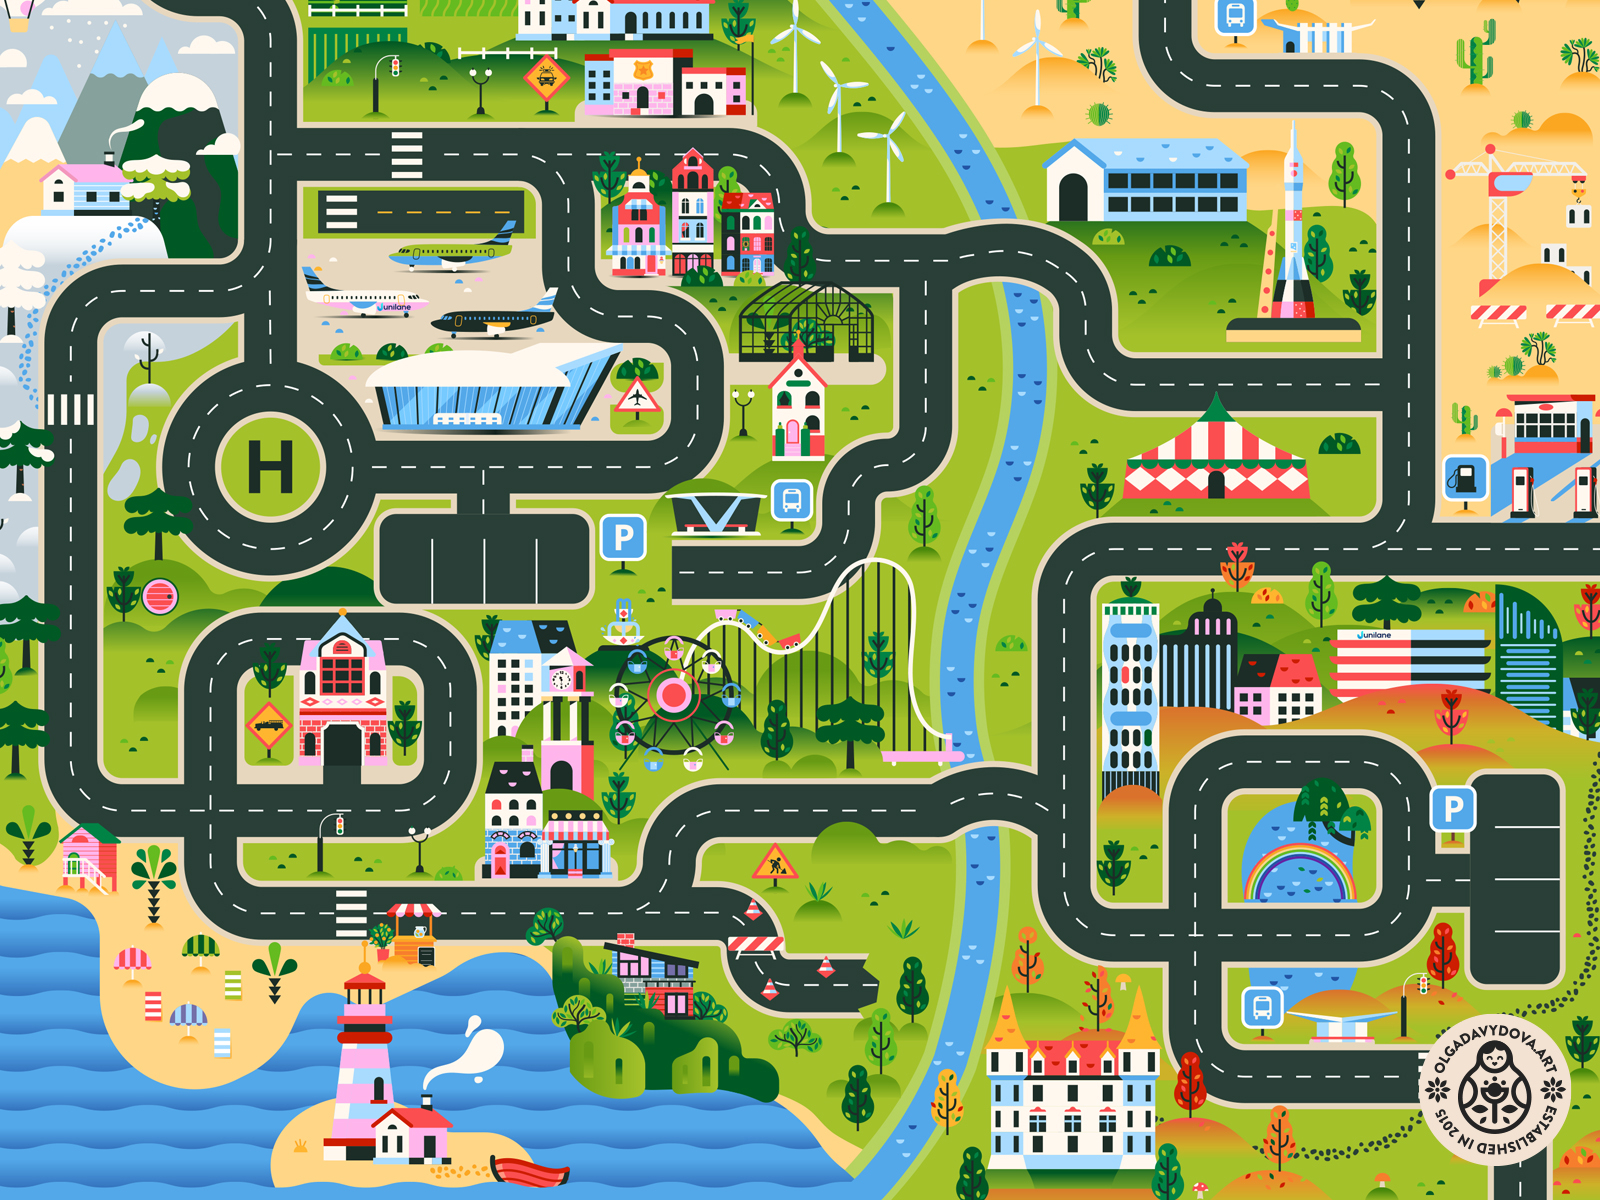 945 hoog spellen City Road Map Play mat illustration (Full) by Olga Davydova on Dribbble